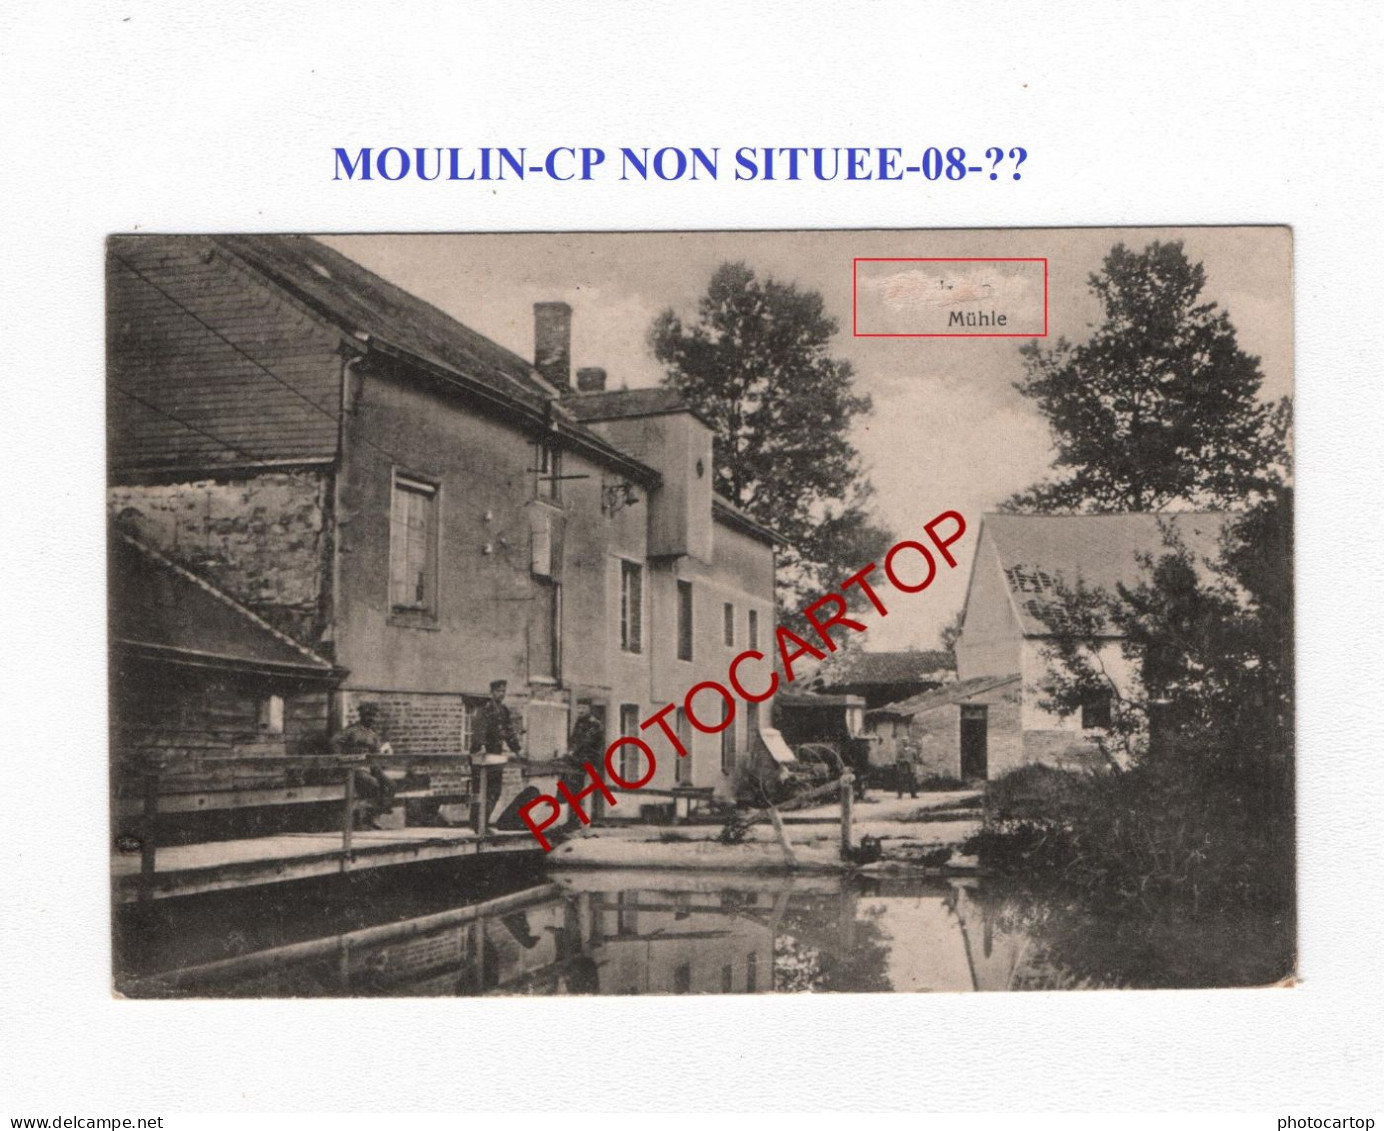 Moulin-CP NON SITUEE-08-??-CARTE Imprimee Allemande-Guerre 14-18-1 WK-France-FELDPOST - Molinos De Agua